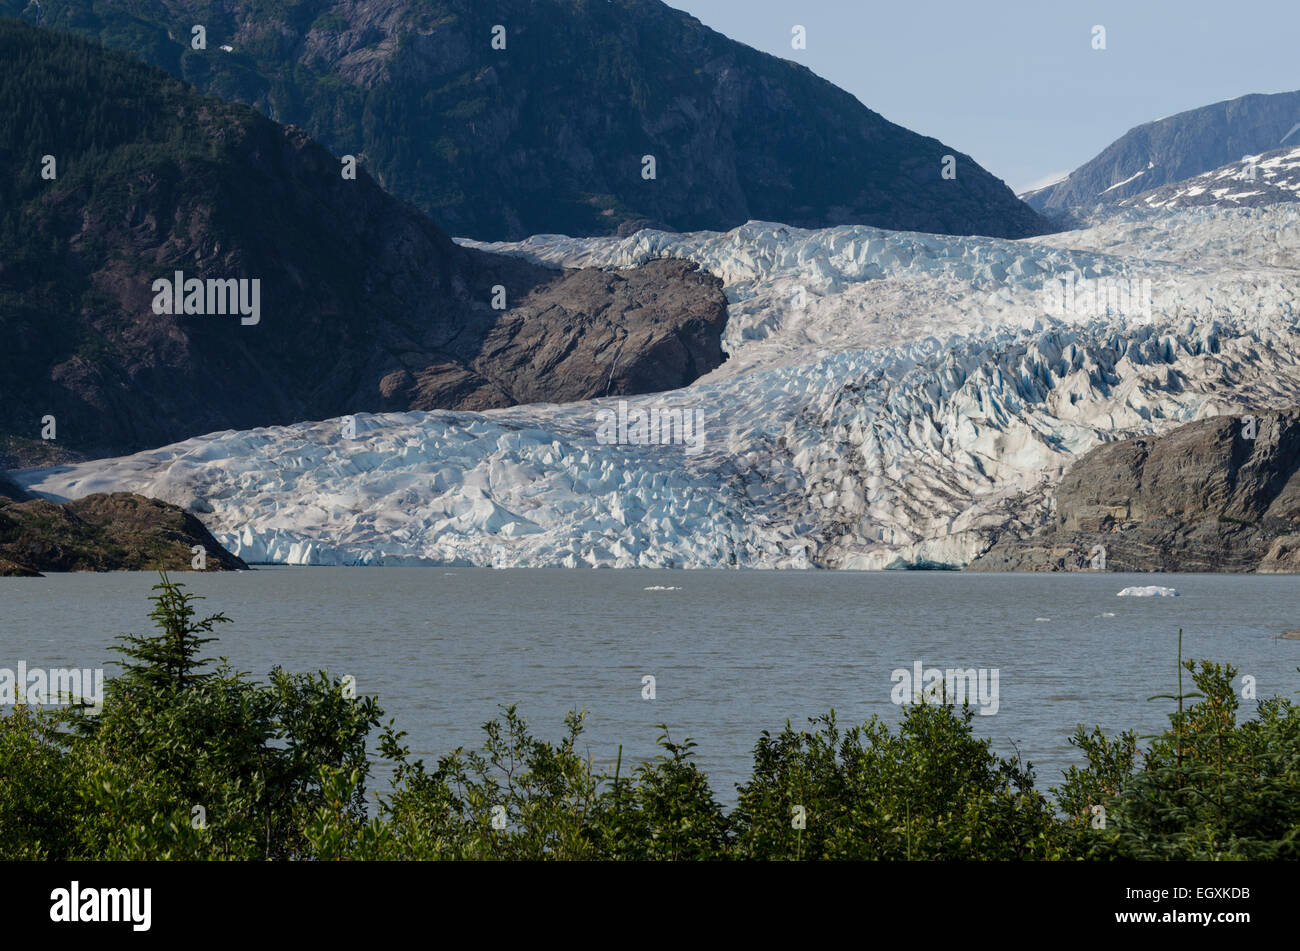 Mendenhall Gletscher ist ein kalbende Gletscher endet in Mendenhall Lake etwa 16 Meilen von der Innenstadt von Juneau, Alaska Hauptstadt. S Stockfoto